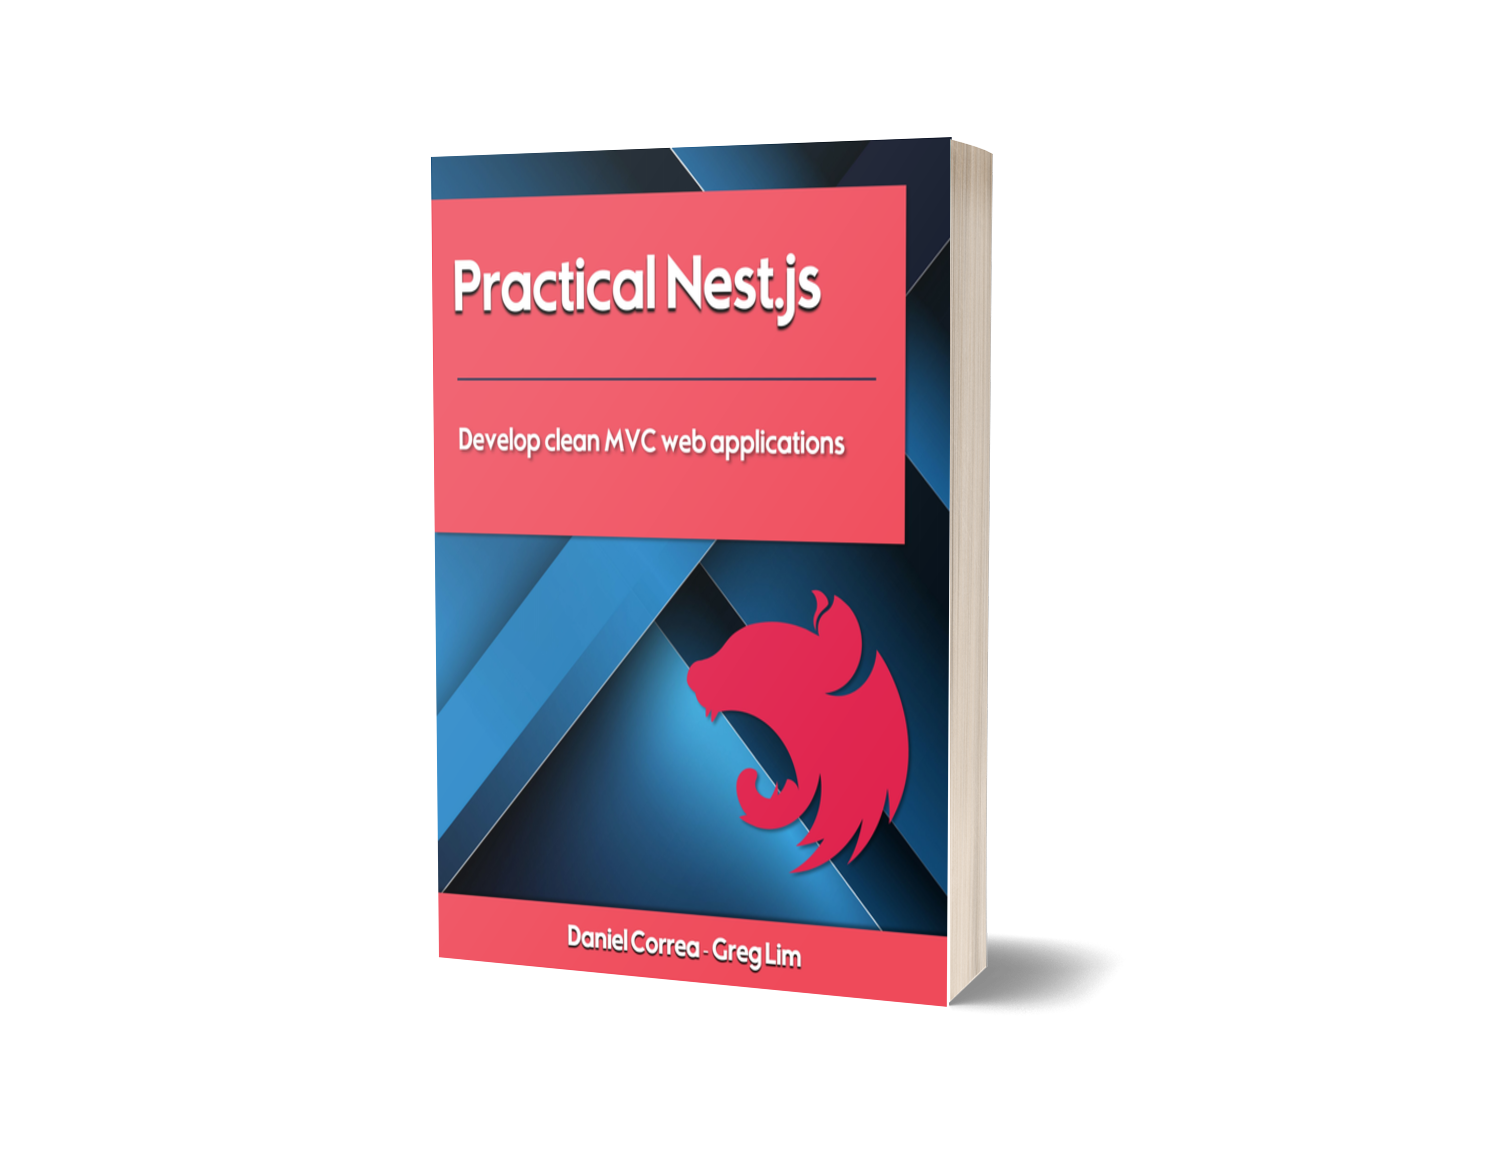 Practical Nest.js Book